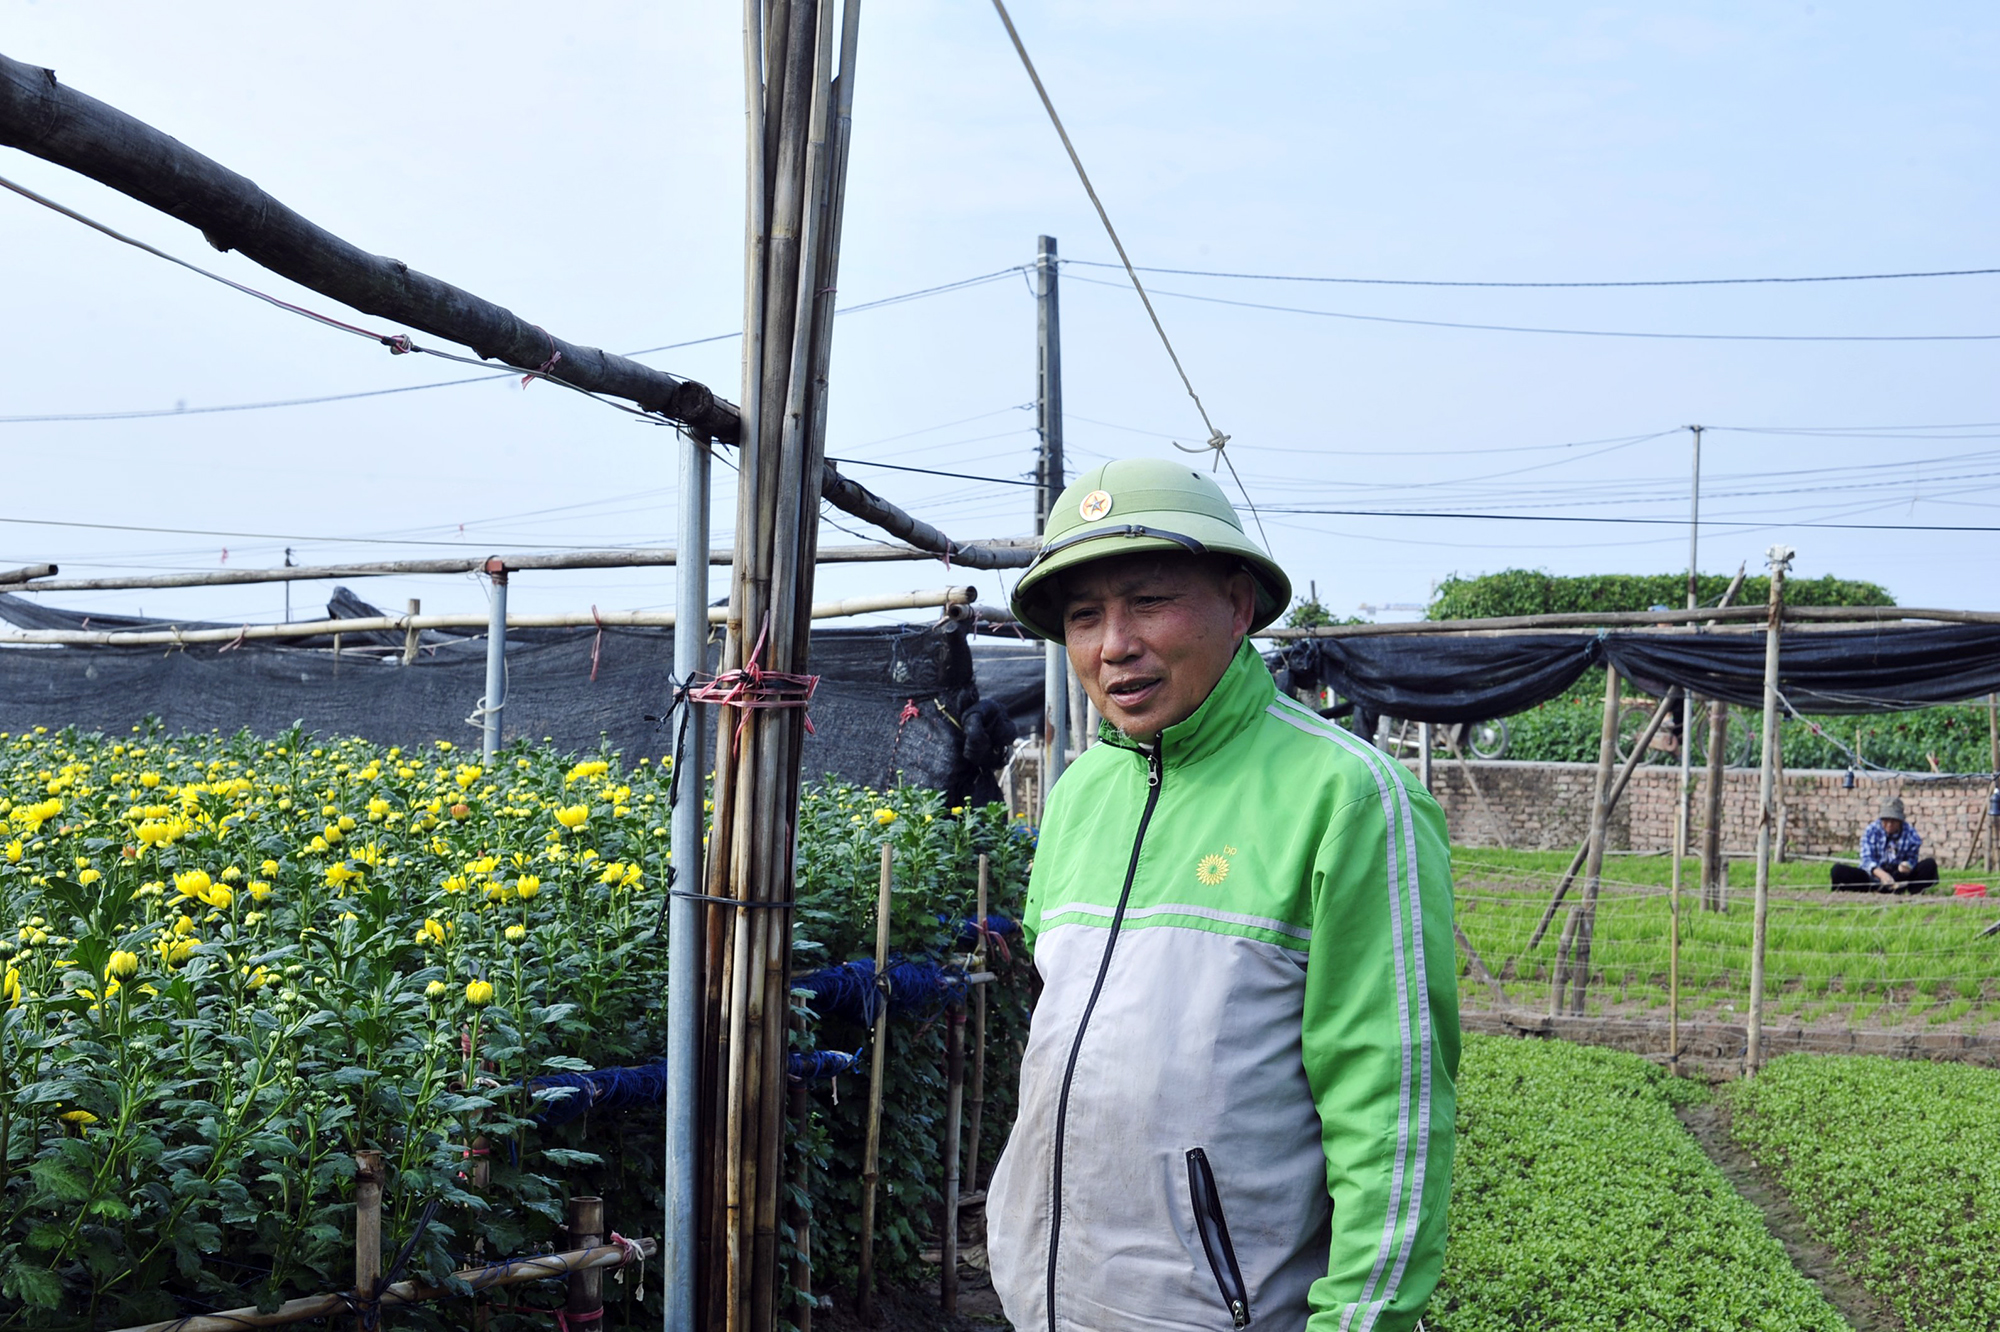 Hoa nở “lệch múi giờ”, nông dân Hà Nội thu hoạch sớm để bảo quản lạnh, chờ phục vụ người chơi đúng dịp Tết - Ảnh 7.